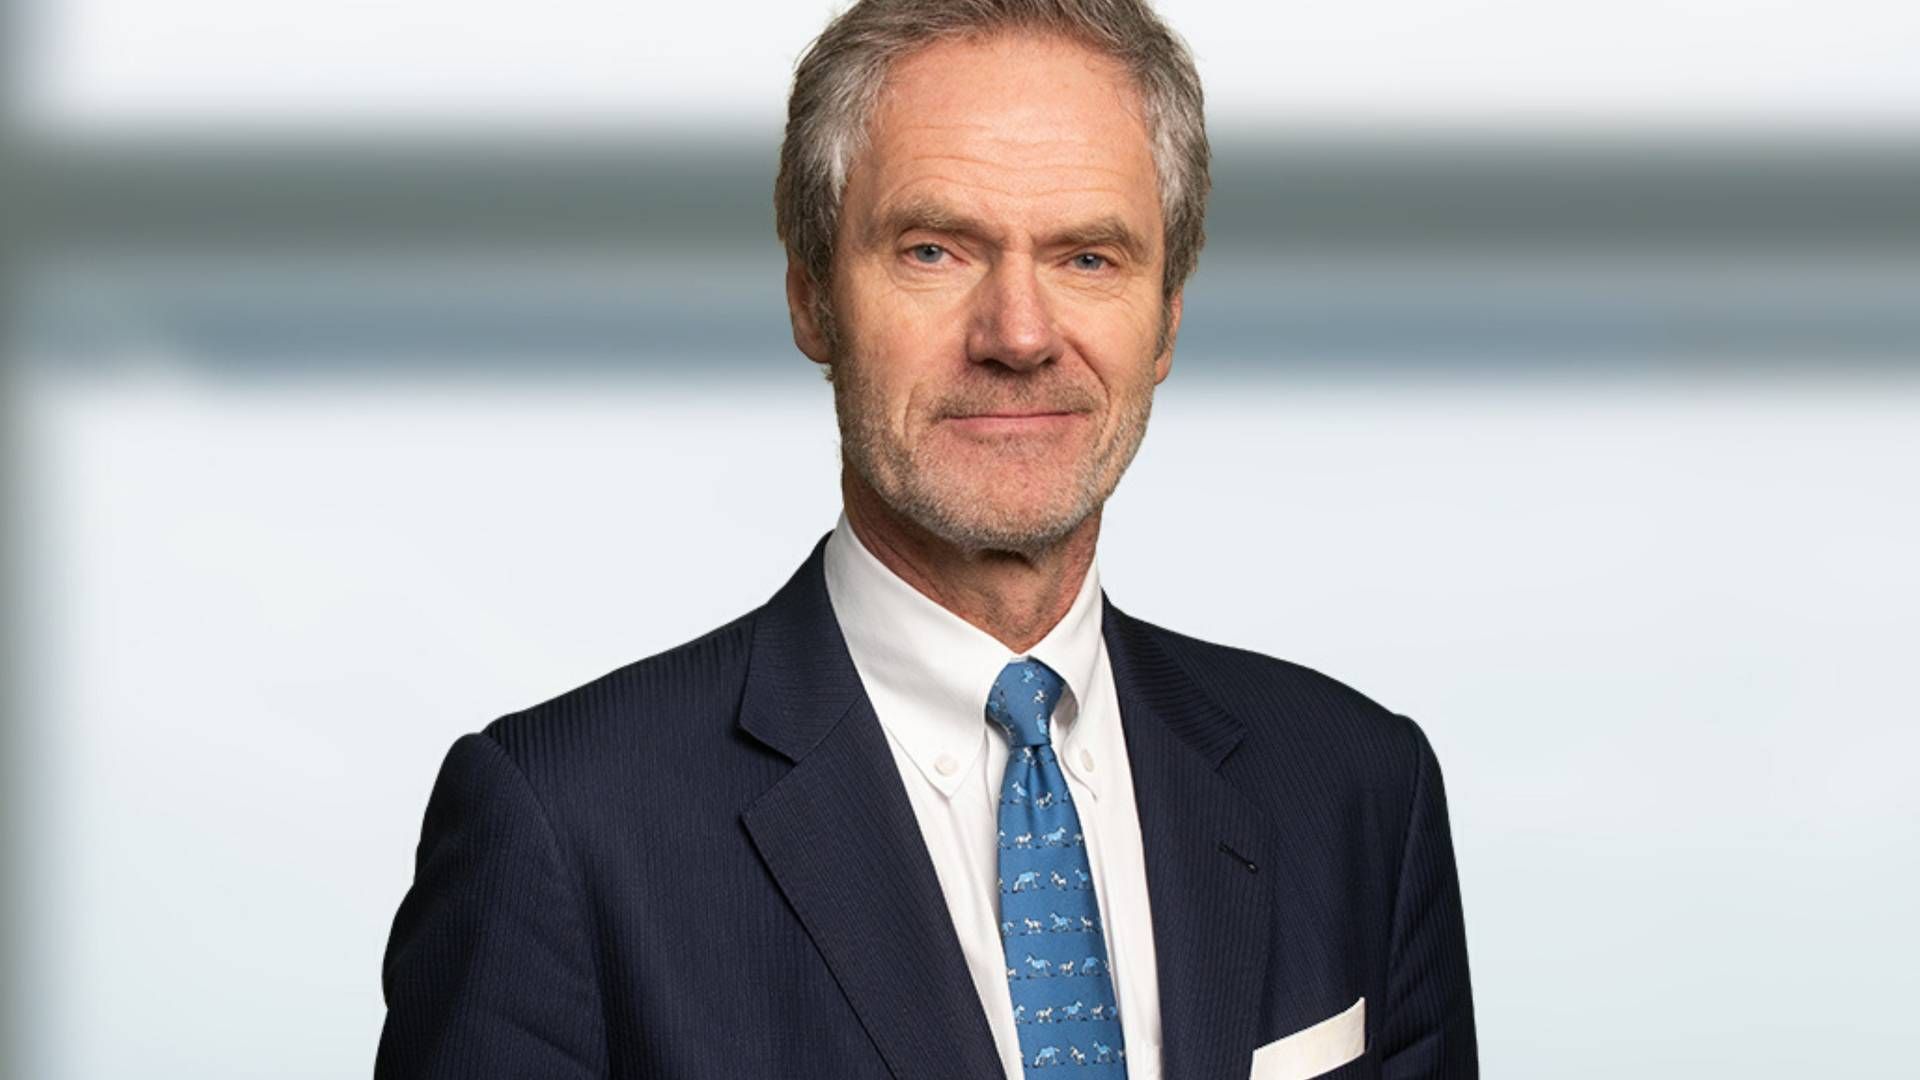 Anders Onarheim hos været hos BW LPG i 12 år, de seneste tre som topchef. Han stopper med udgangen af september. | Foto: Bw Lpg